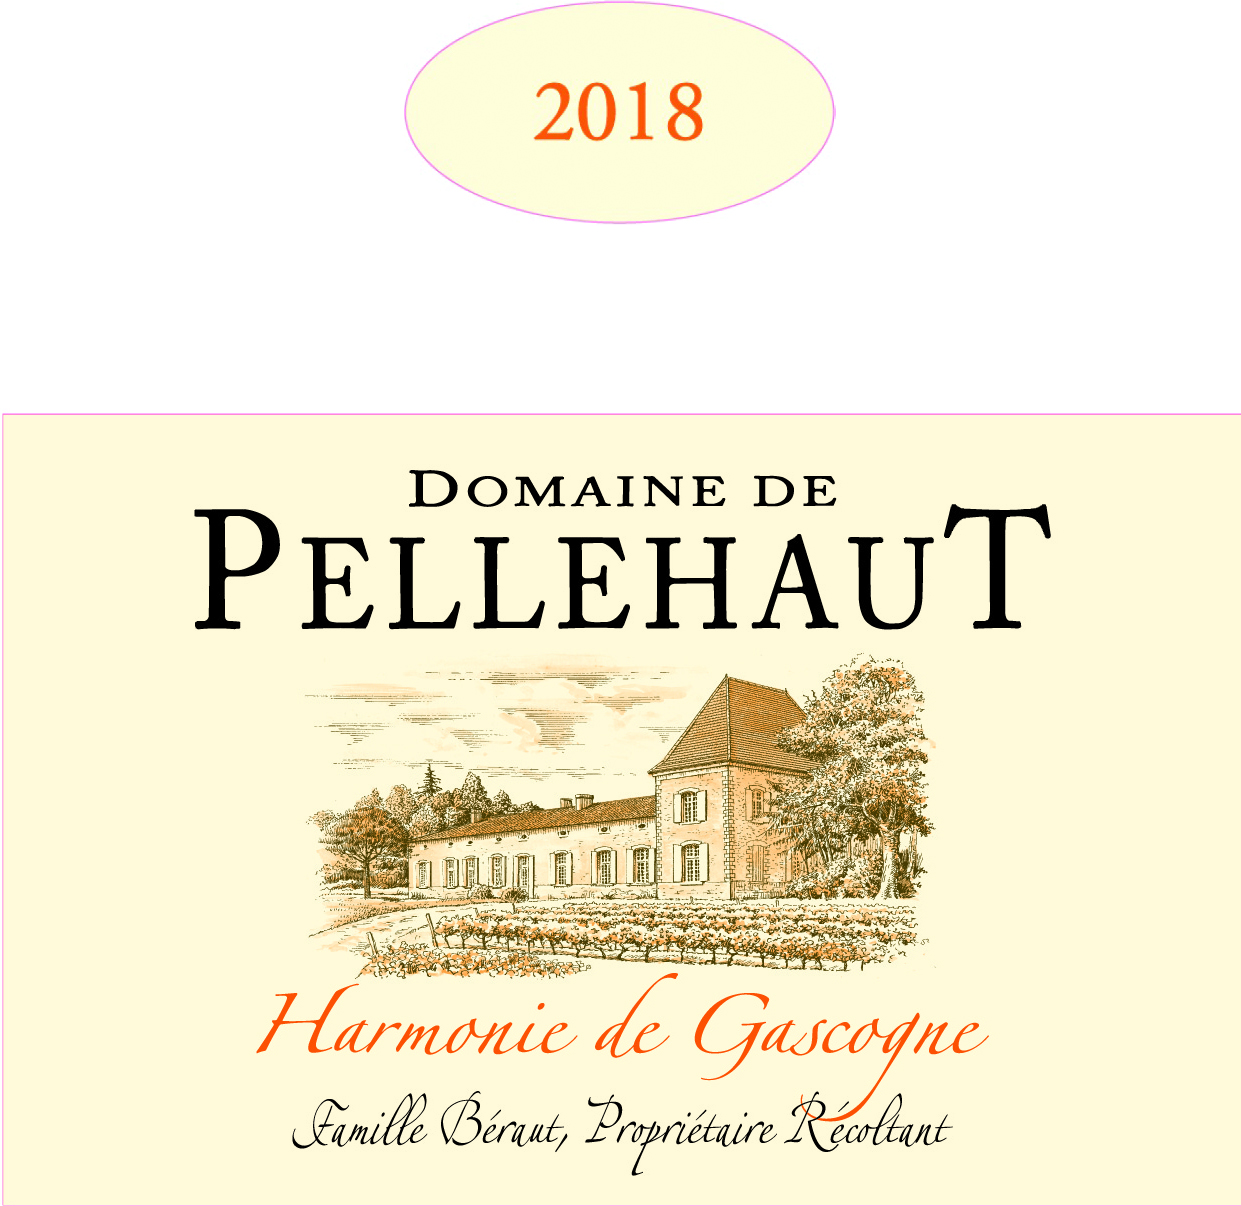 Domaine de Pellehaut Harmonie de Gascogne IGP Côtes de Gascogne White 2018